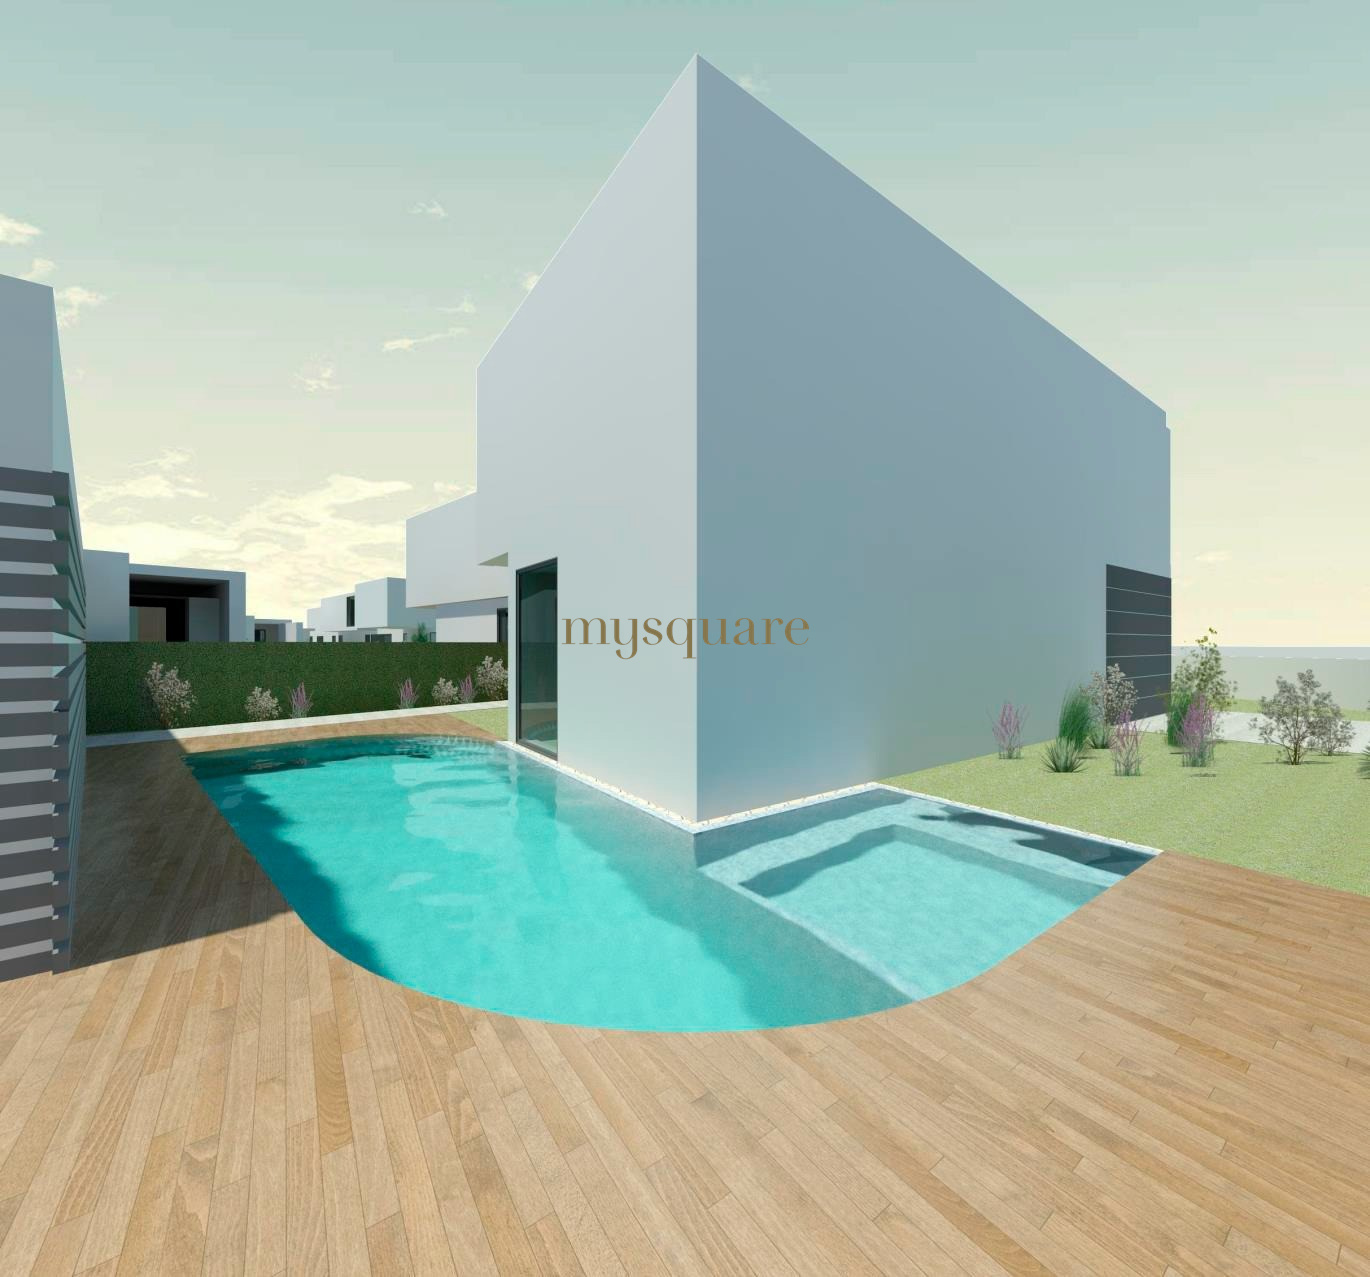 Luxury 5 bedroom villa under construction with pool and sea view, 100m from Praia de Esmoriz